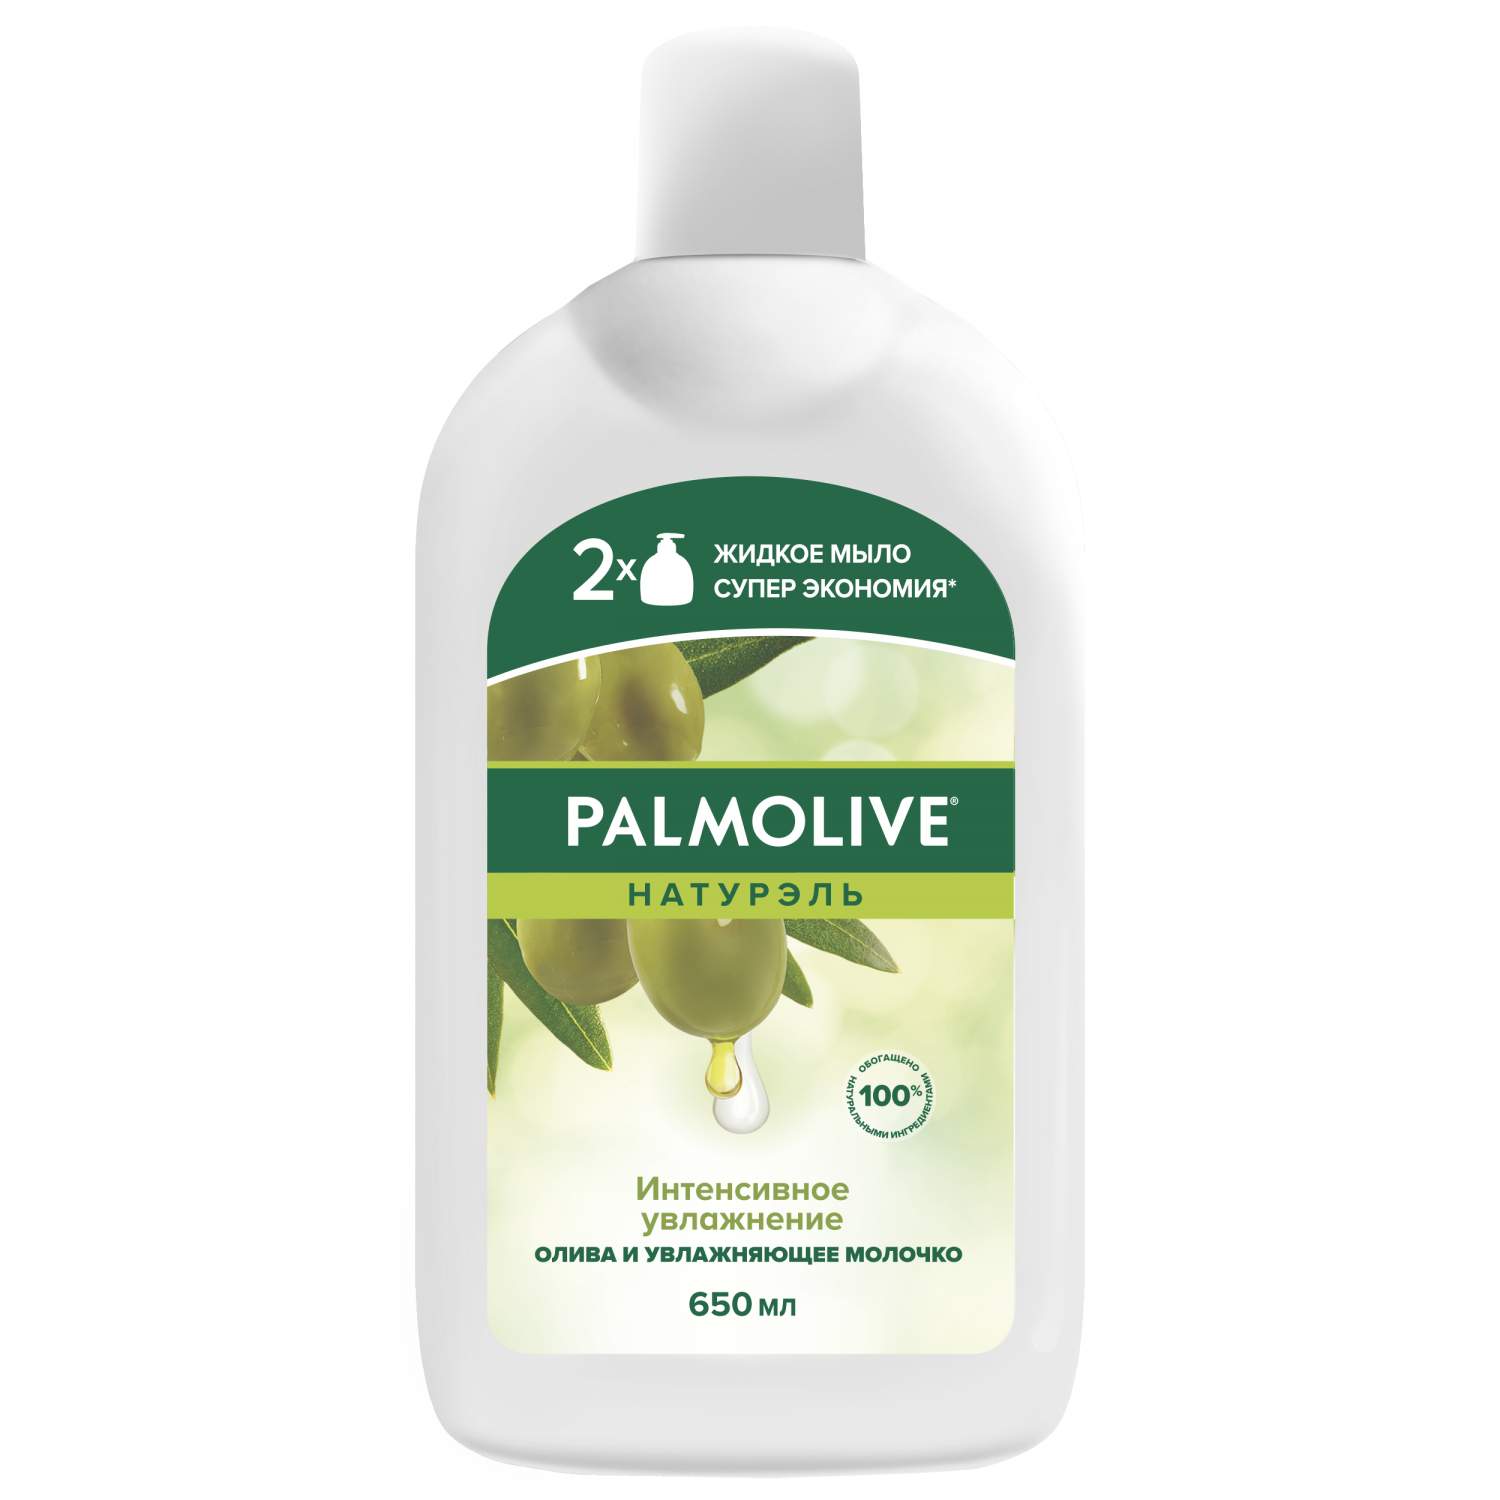 Жидкое мыло Palmolive -  жидкое мыло Палмолив, цены  на .